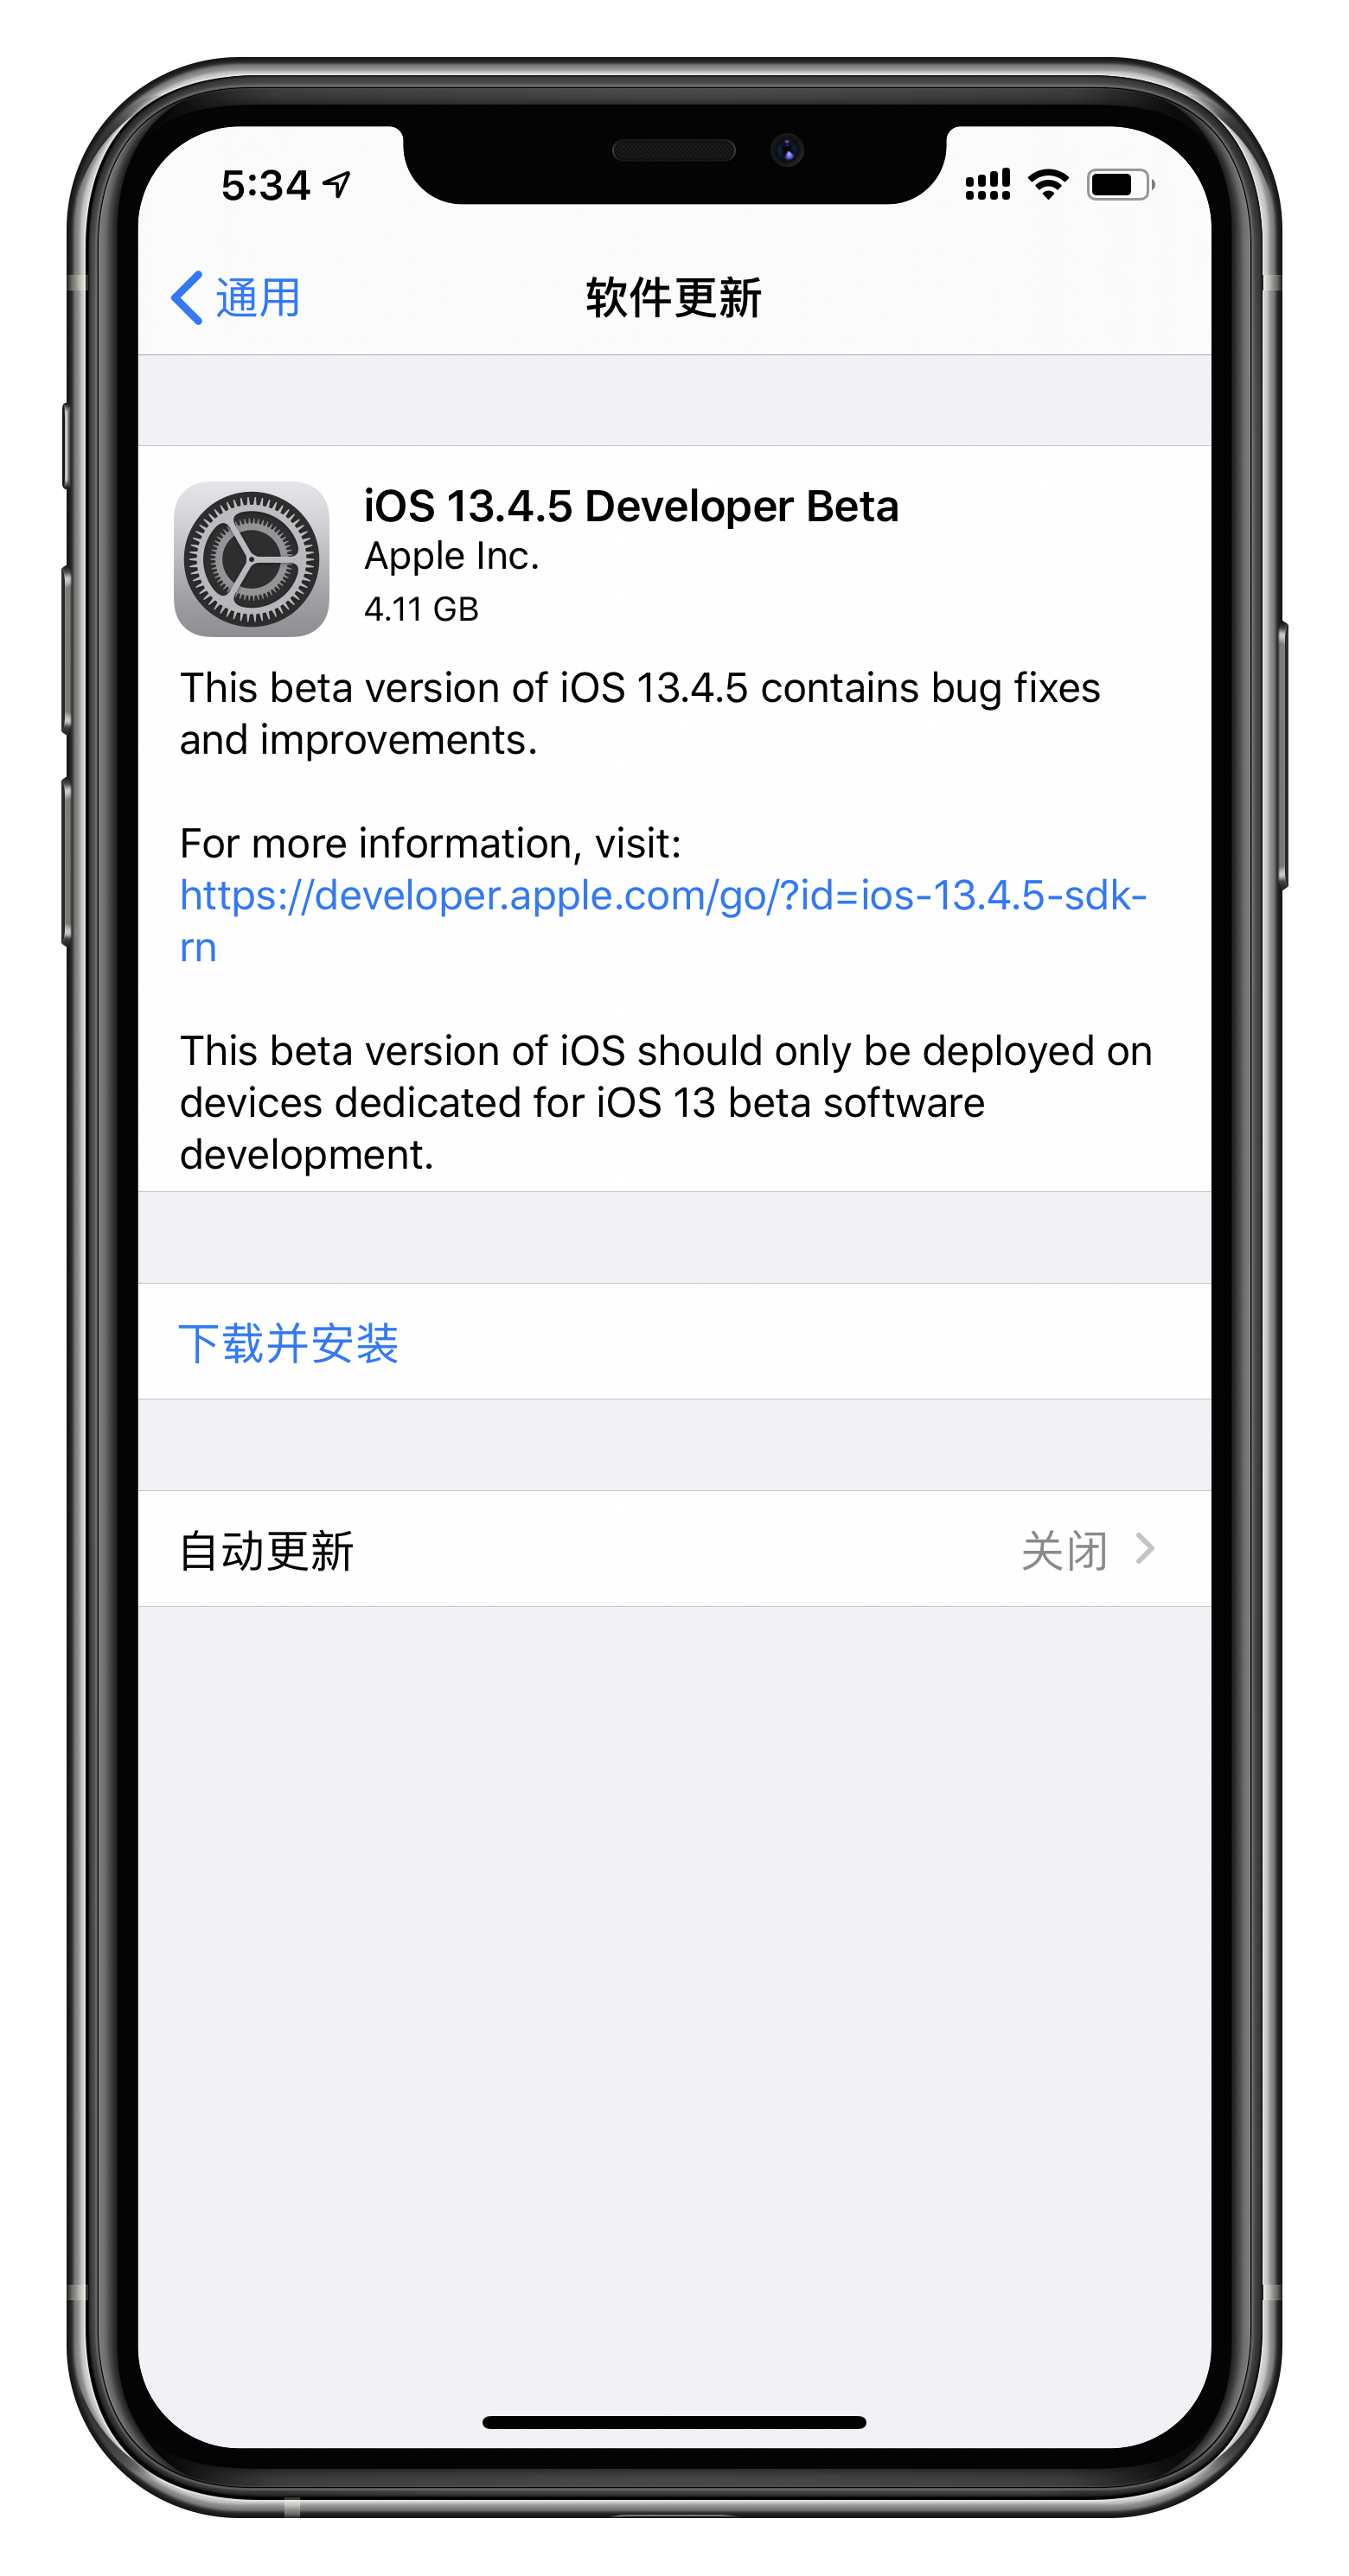 苹果推送 iOS 13.4.5 首个测试版，并且关闭了 13.3.1 系统验证